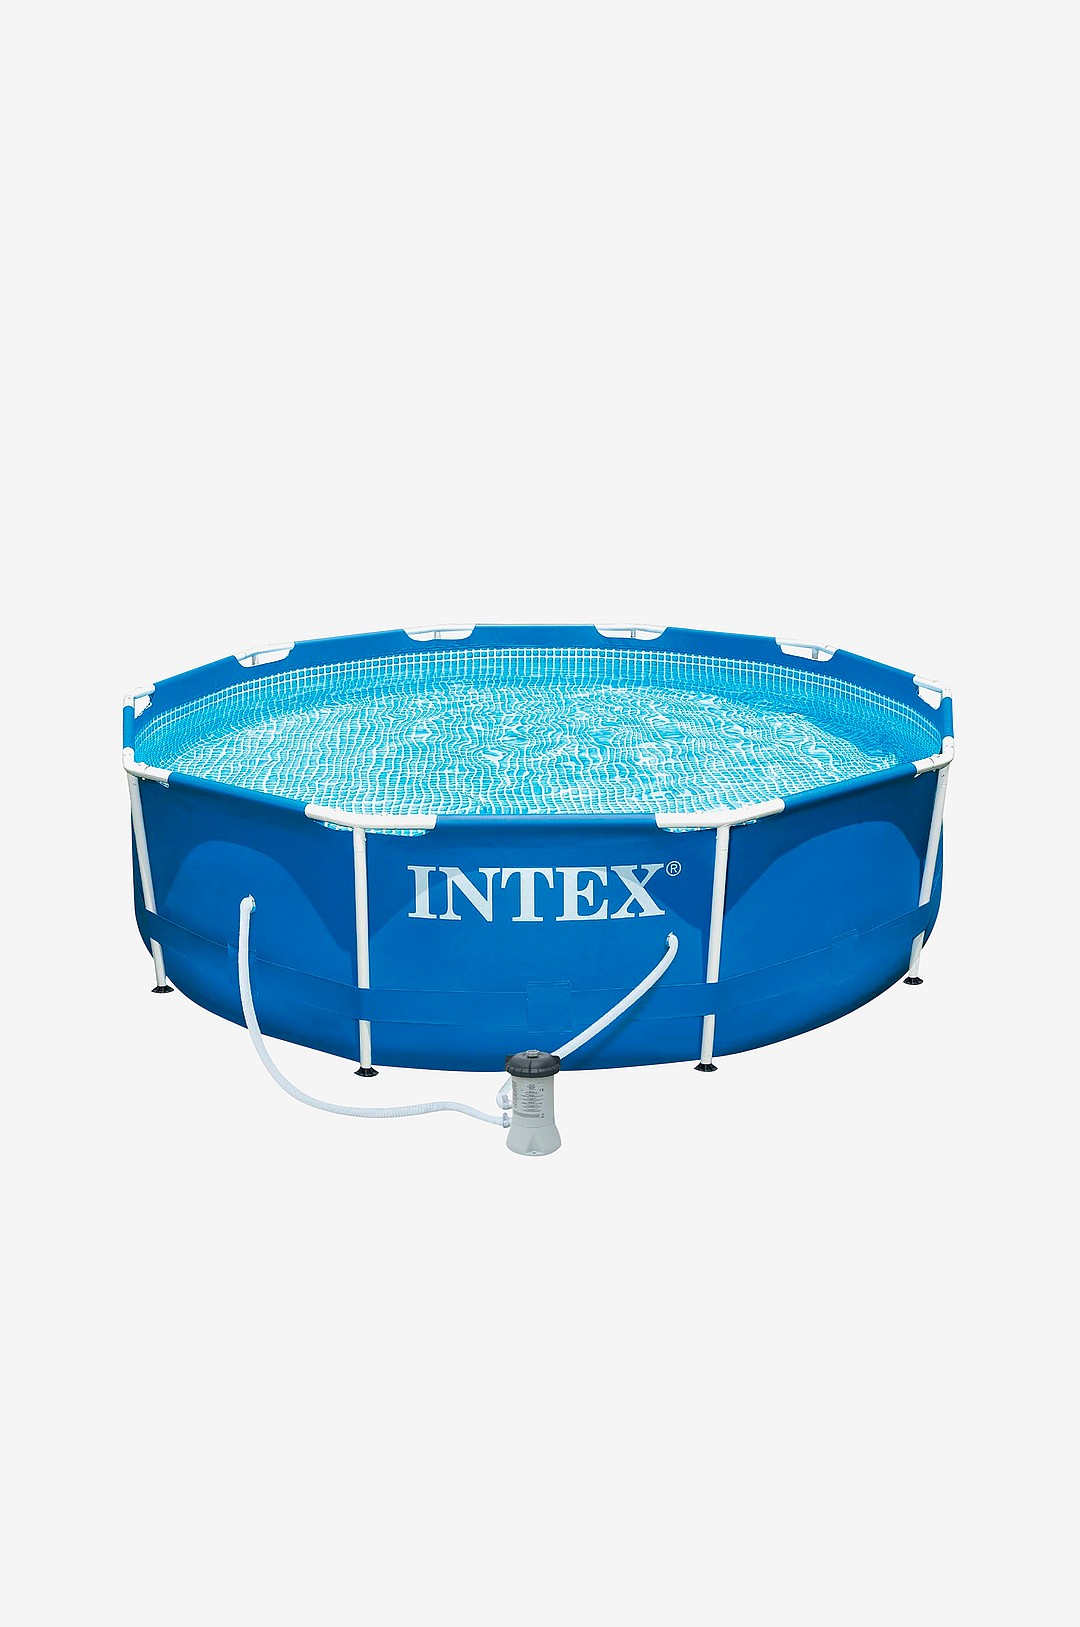 Intex - Rörpool 305x76cm - Blå